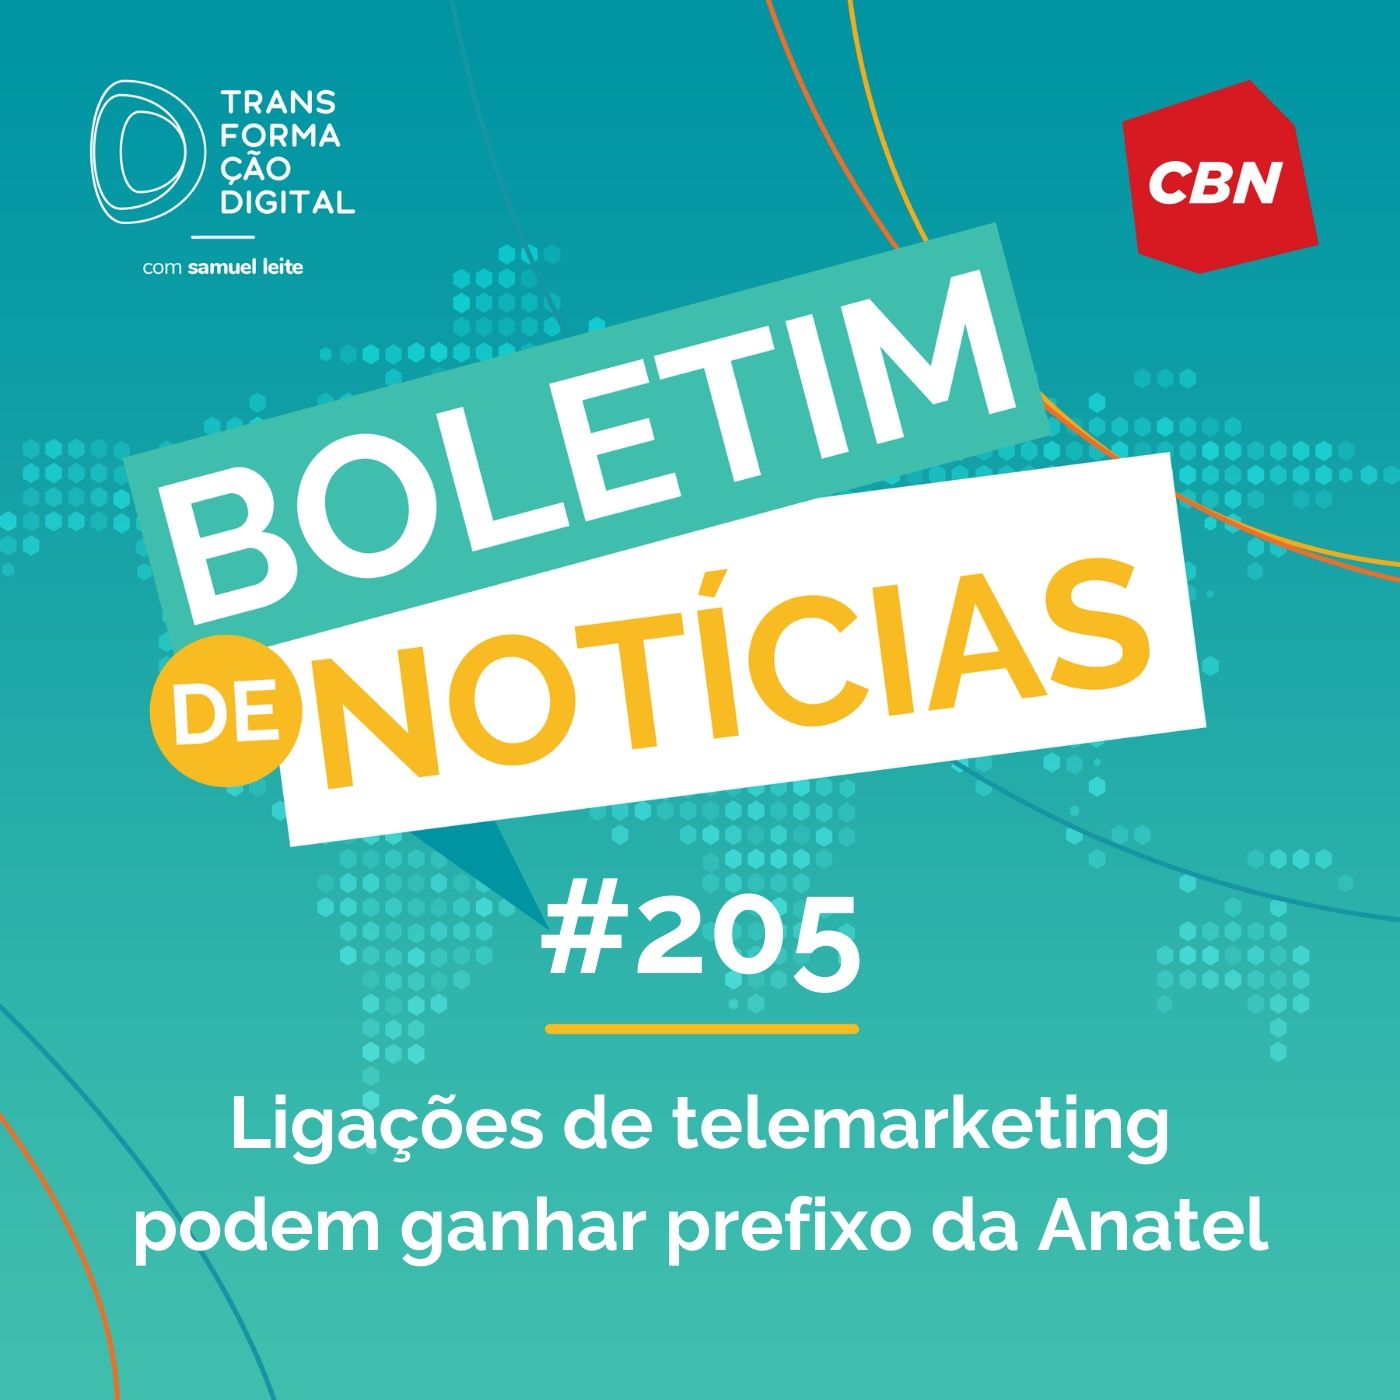 Transformação Digital CBN - Boletim de Notícias #205 - Ligações de telemarketing podem ganhar prefixo da Anatel